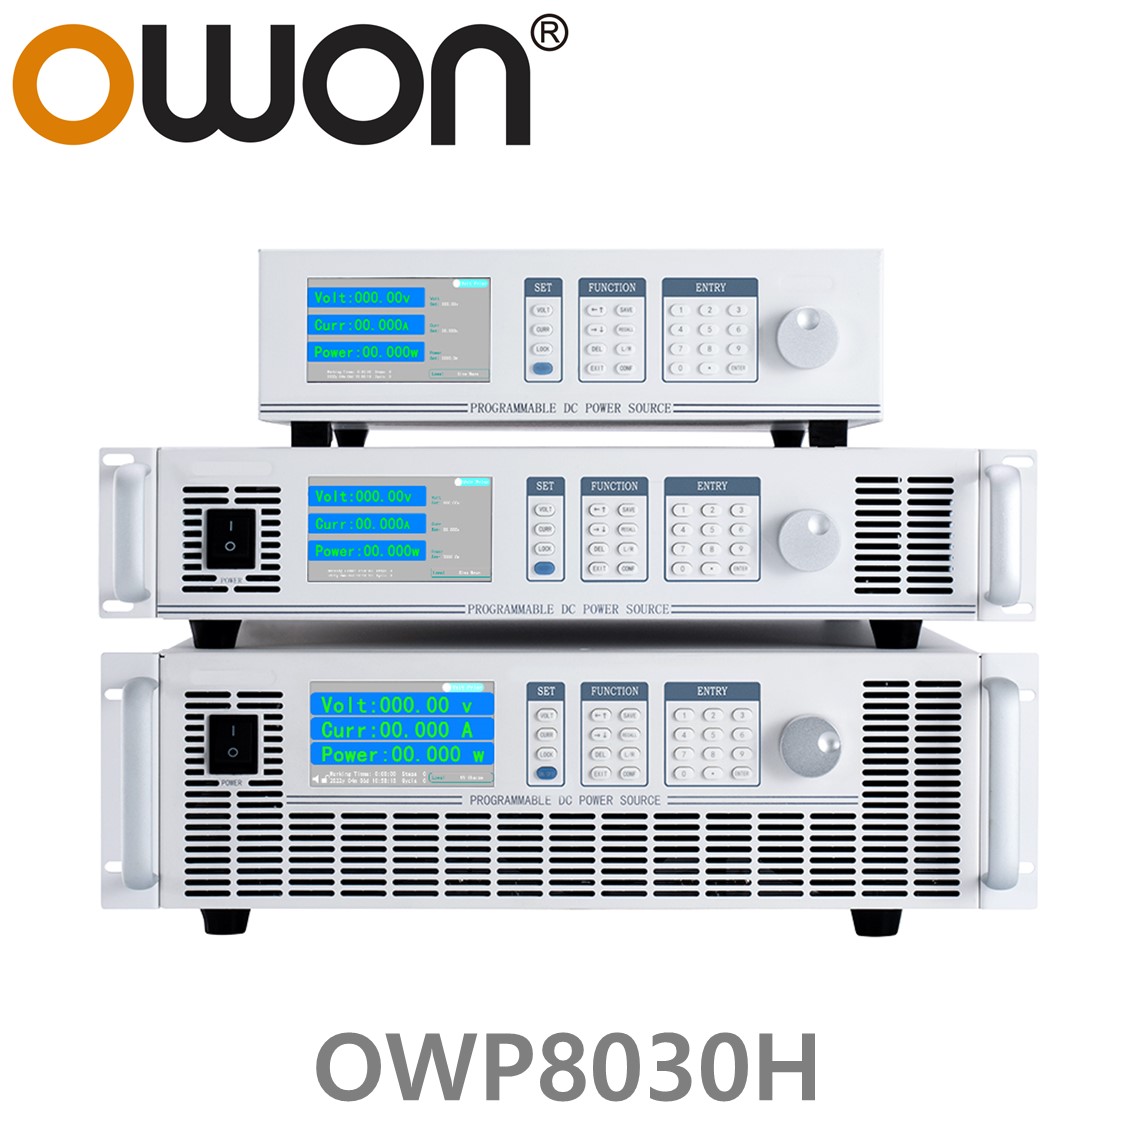 [ OWON ] OWP8030H 고전력 DC파워서플라이, 0-300.00V / 0-34.000A / 8000.0W DC전원공급장치